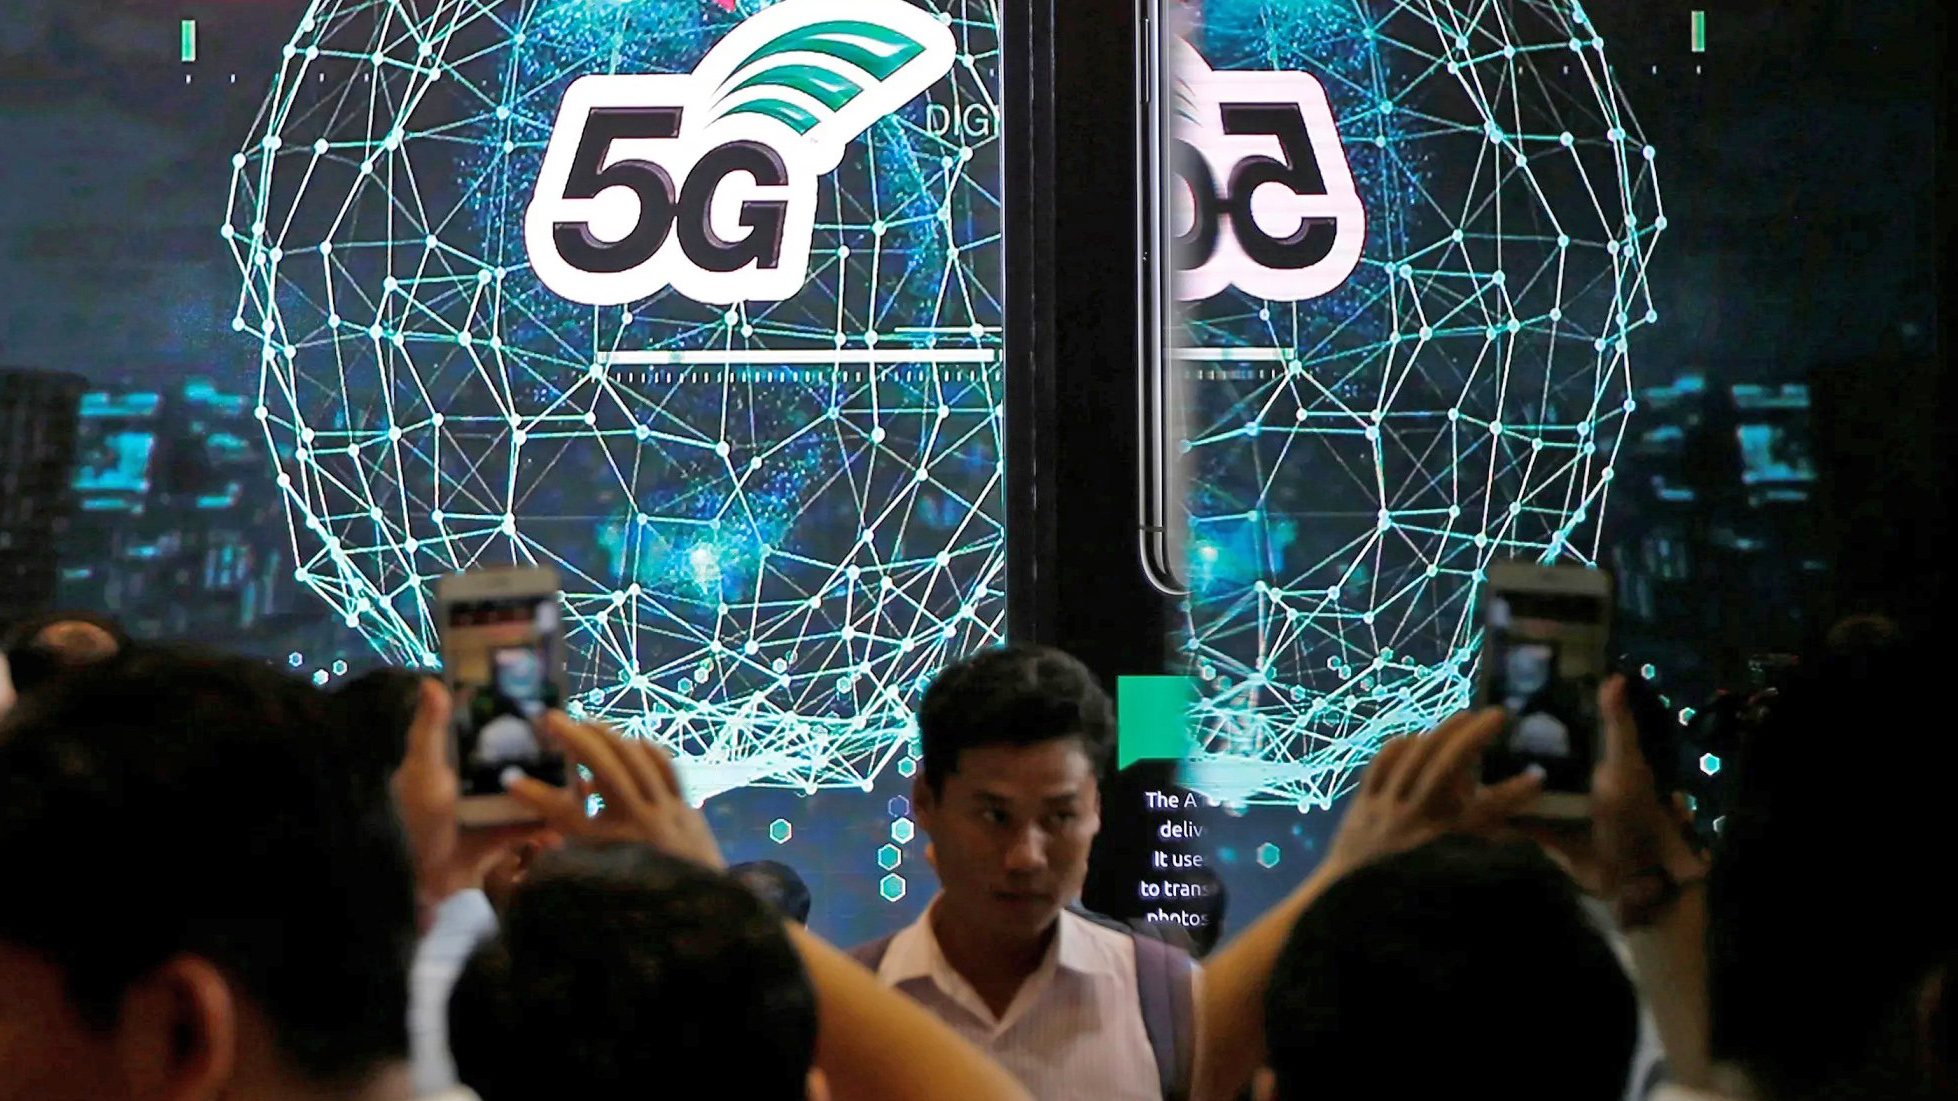 Thái Lan khuyến khích các doanh nghiệp sử dụng công nghệ 5G. Ảnh: @AFP.